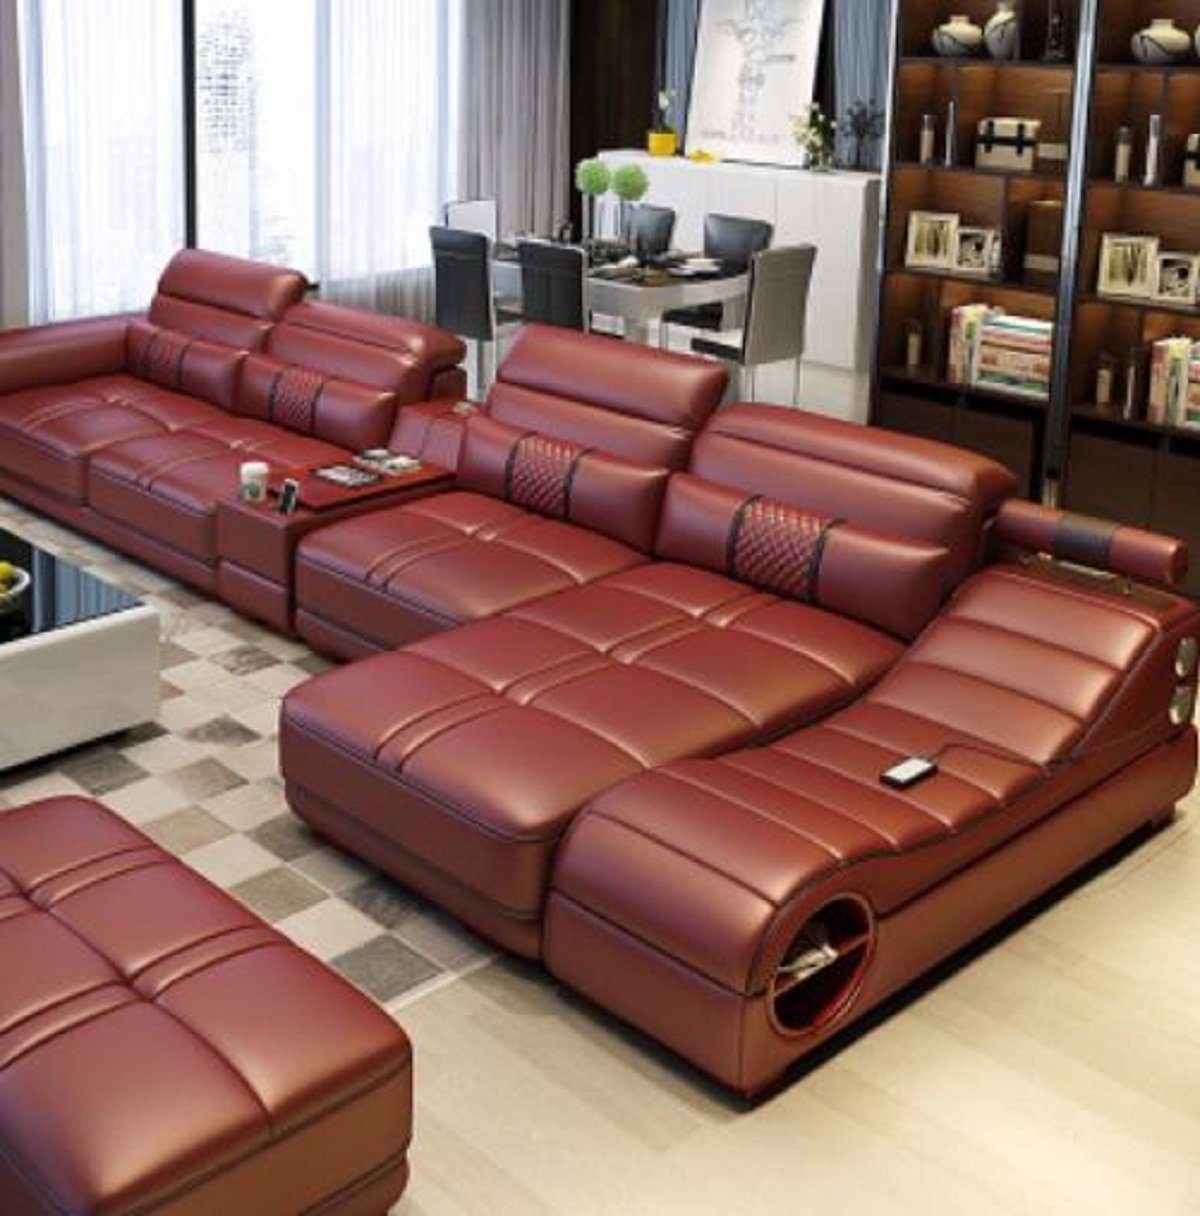 JVmoebel Ecksofa, Wohnlandschaft Luxus Braun Polster Modern Ecksofa Relax Sofa Couch L-form